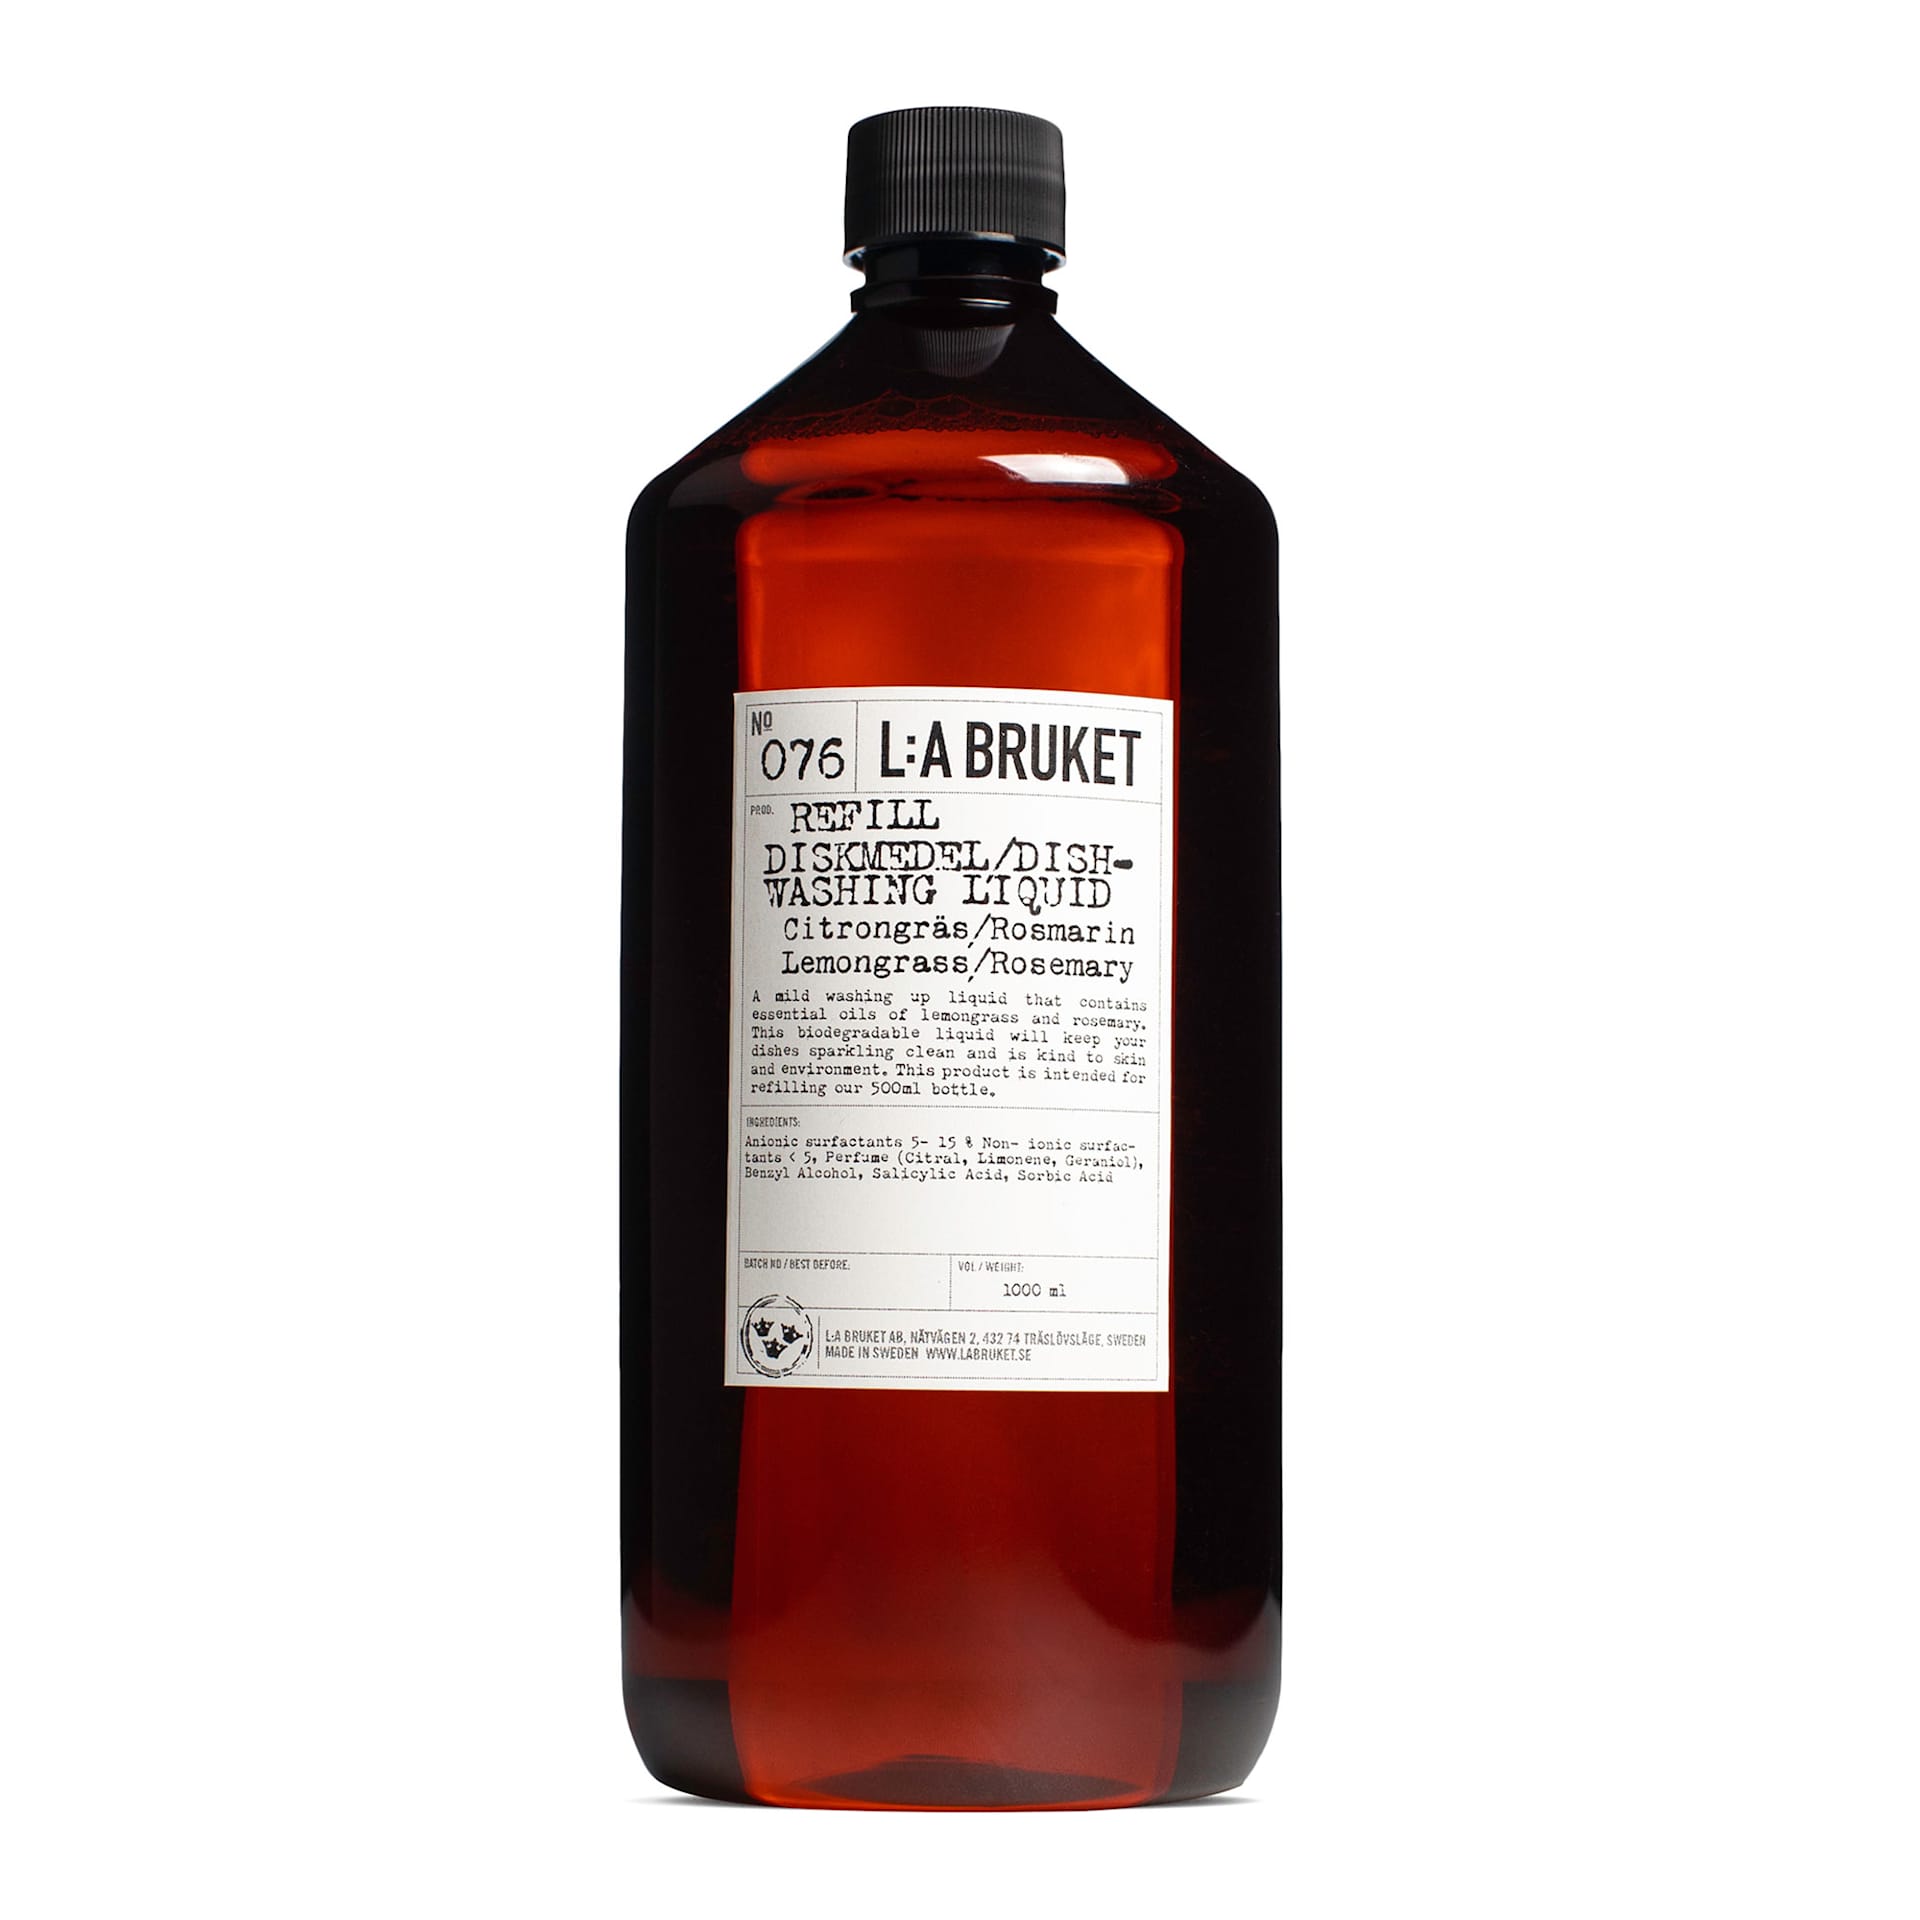 Diskmedel Refill 1000 ml - L:a Bruket - NO GA